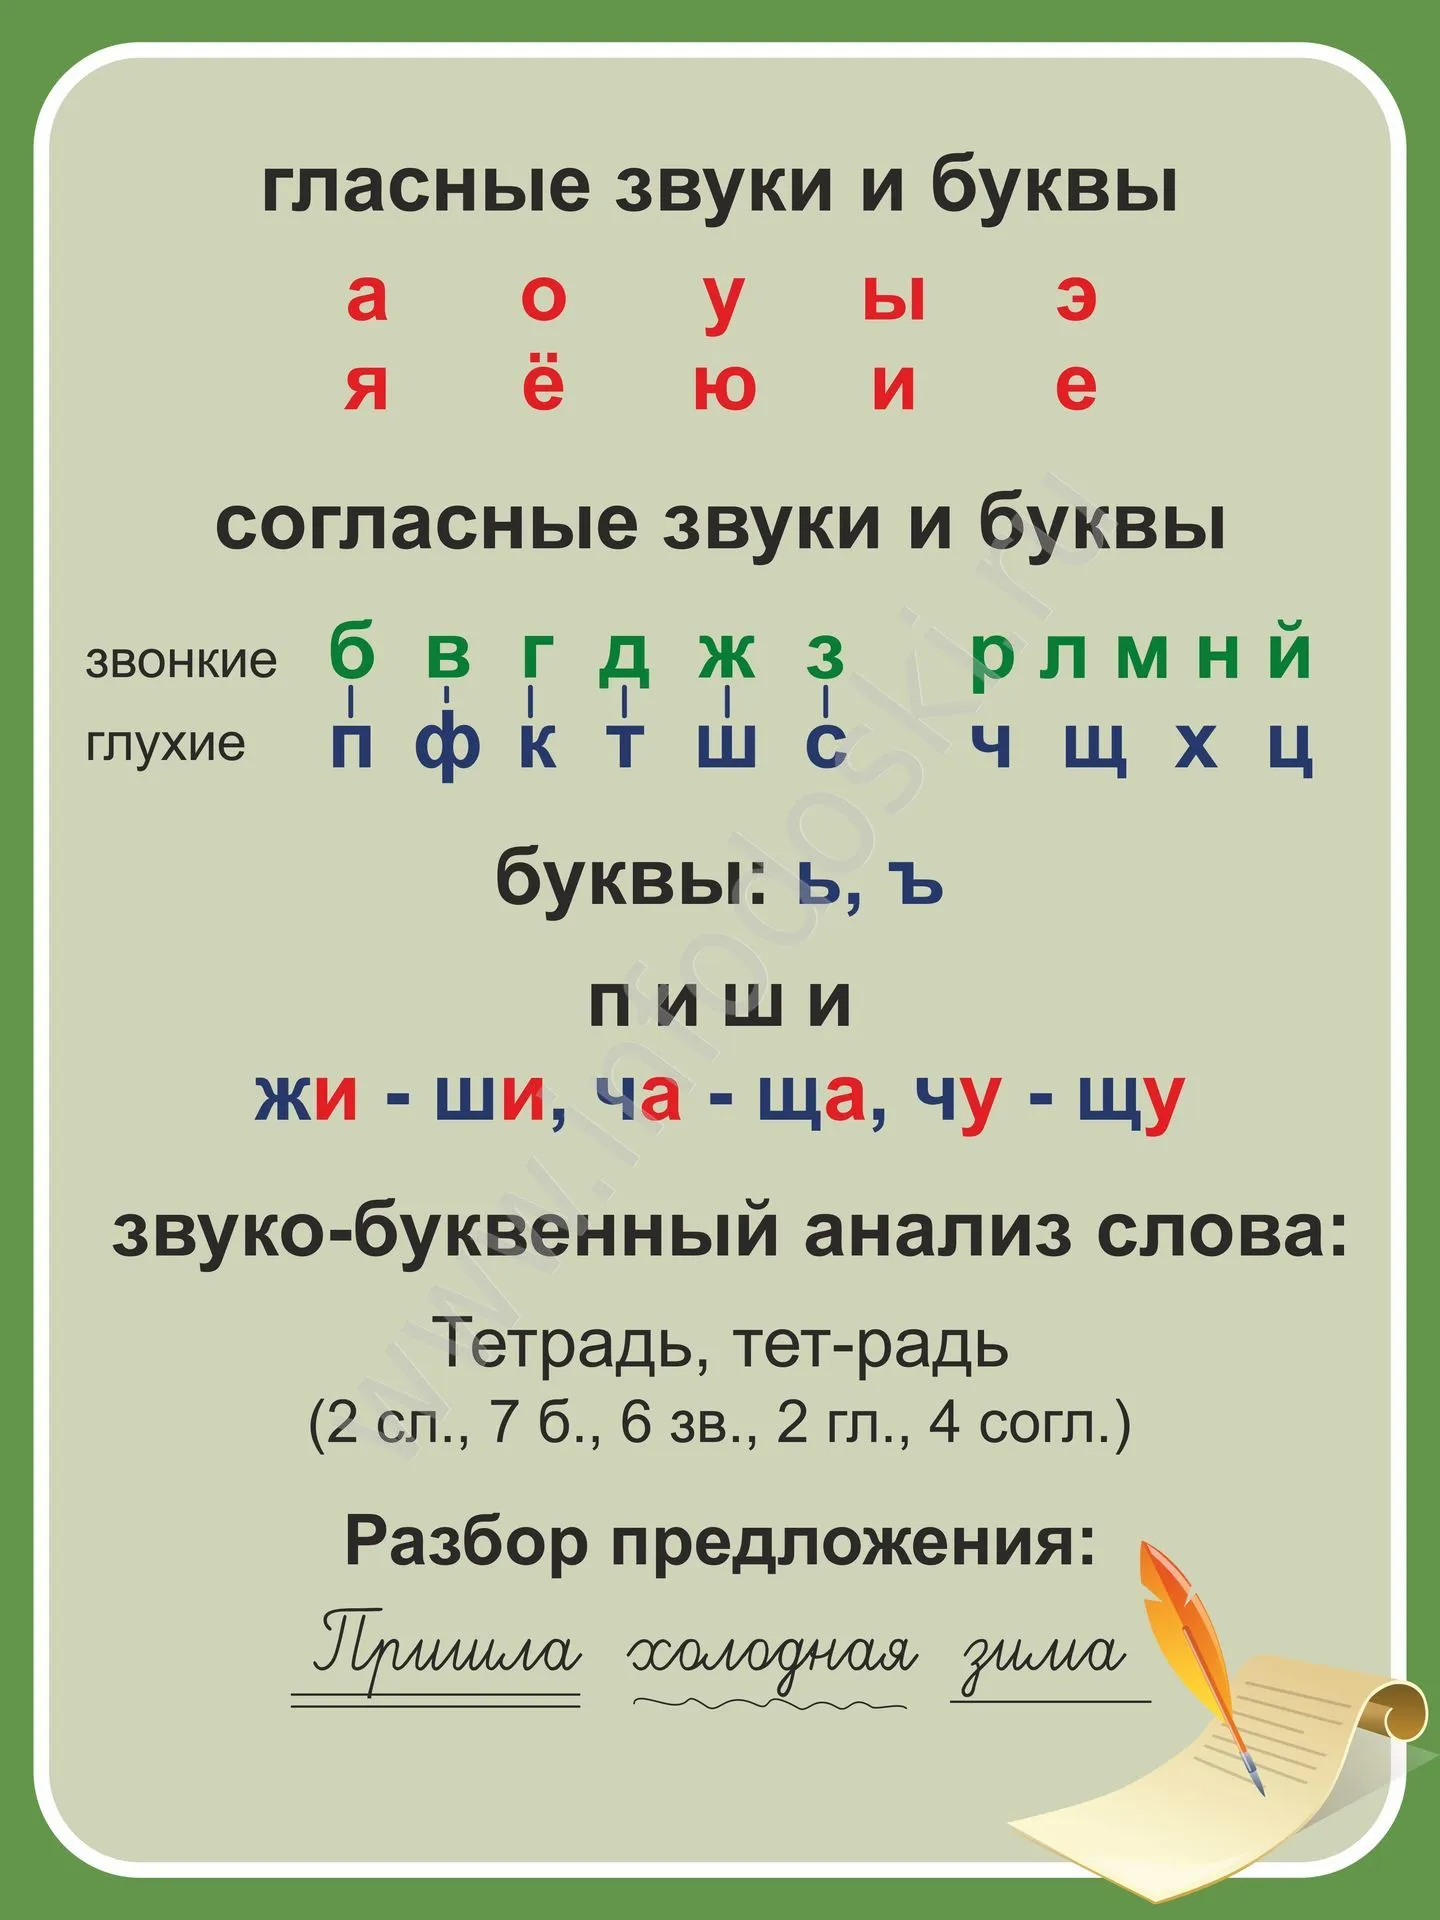 Какие звуки русского языка называются гласными. Гласные и согласные буквы и звуки в русском языке. Согласные и гласные буквы в русском языке. Гласные буквы русского алфавита таблица памятка для детей. Гласные буквы и звуки.